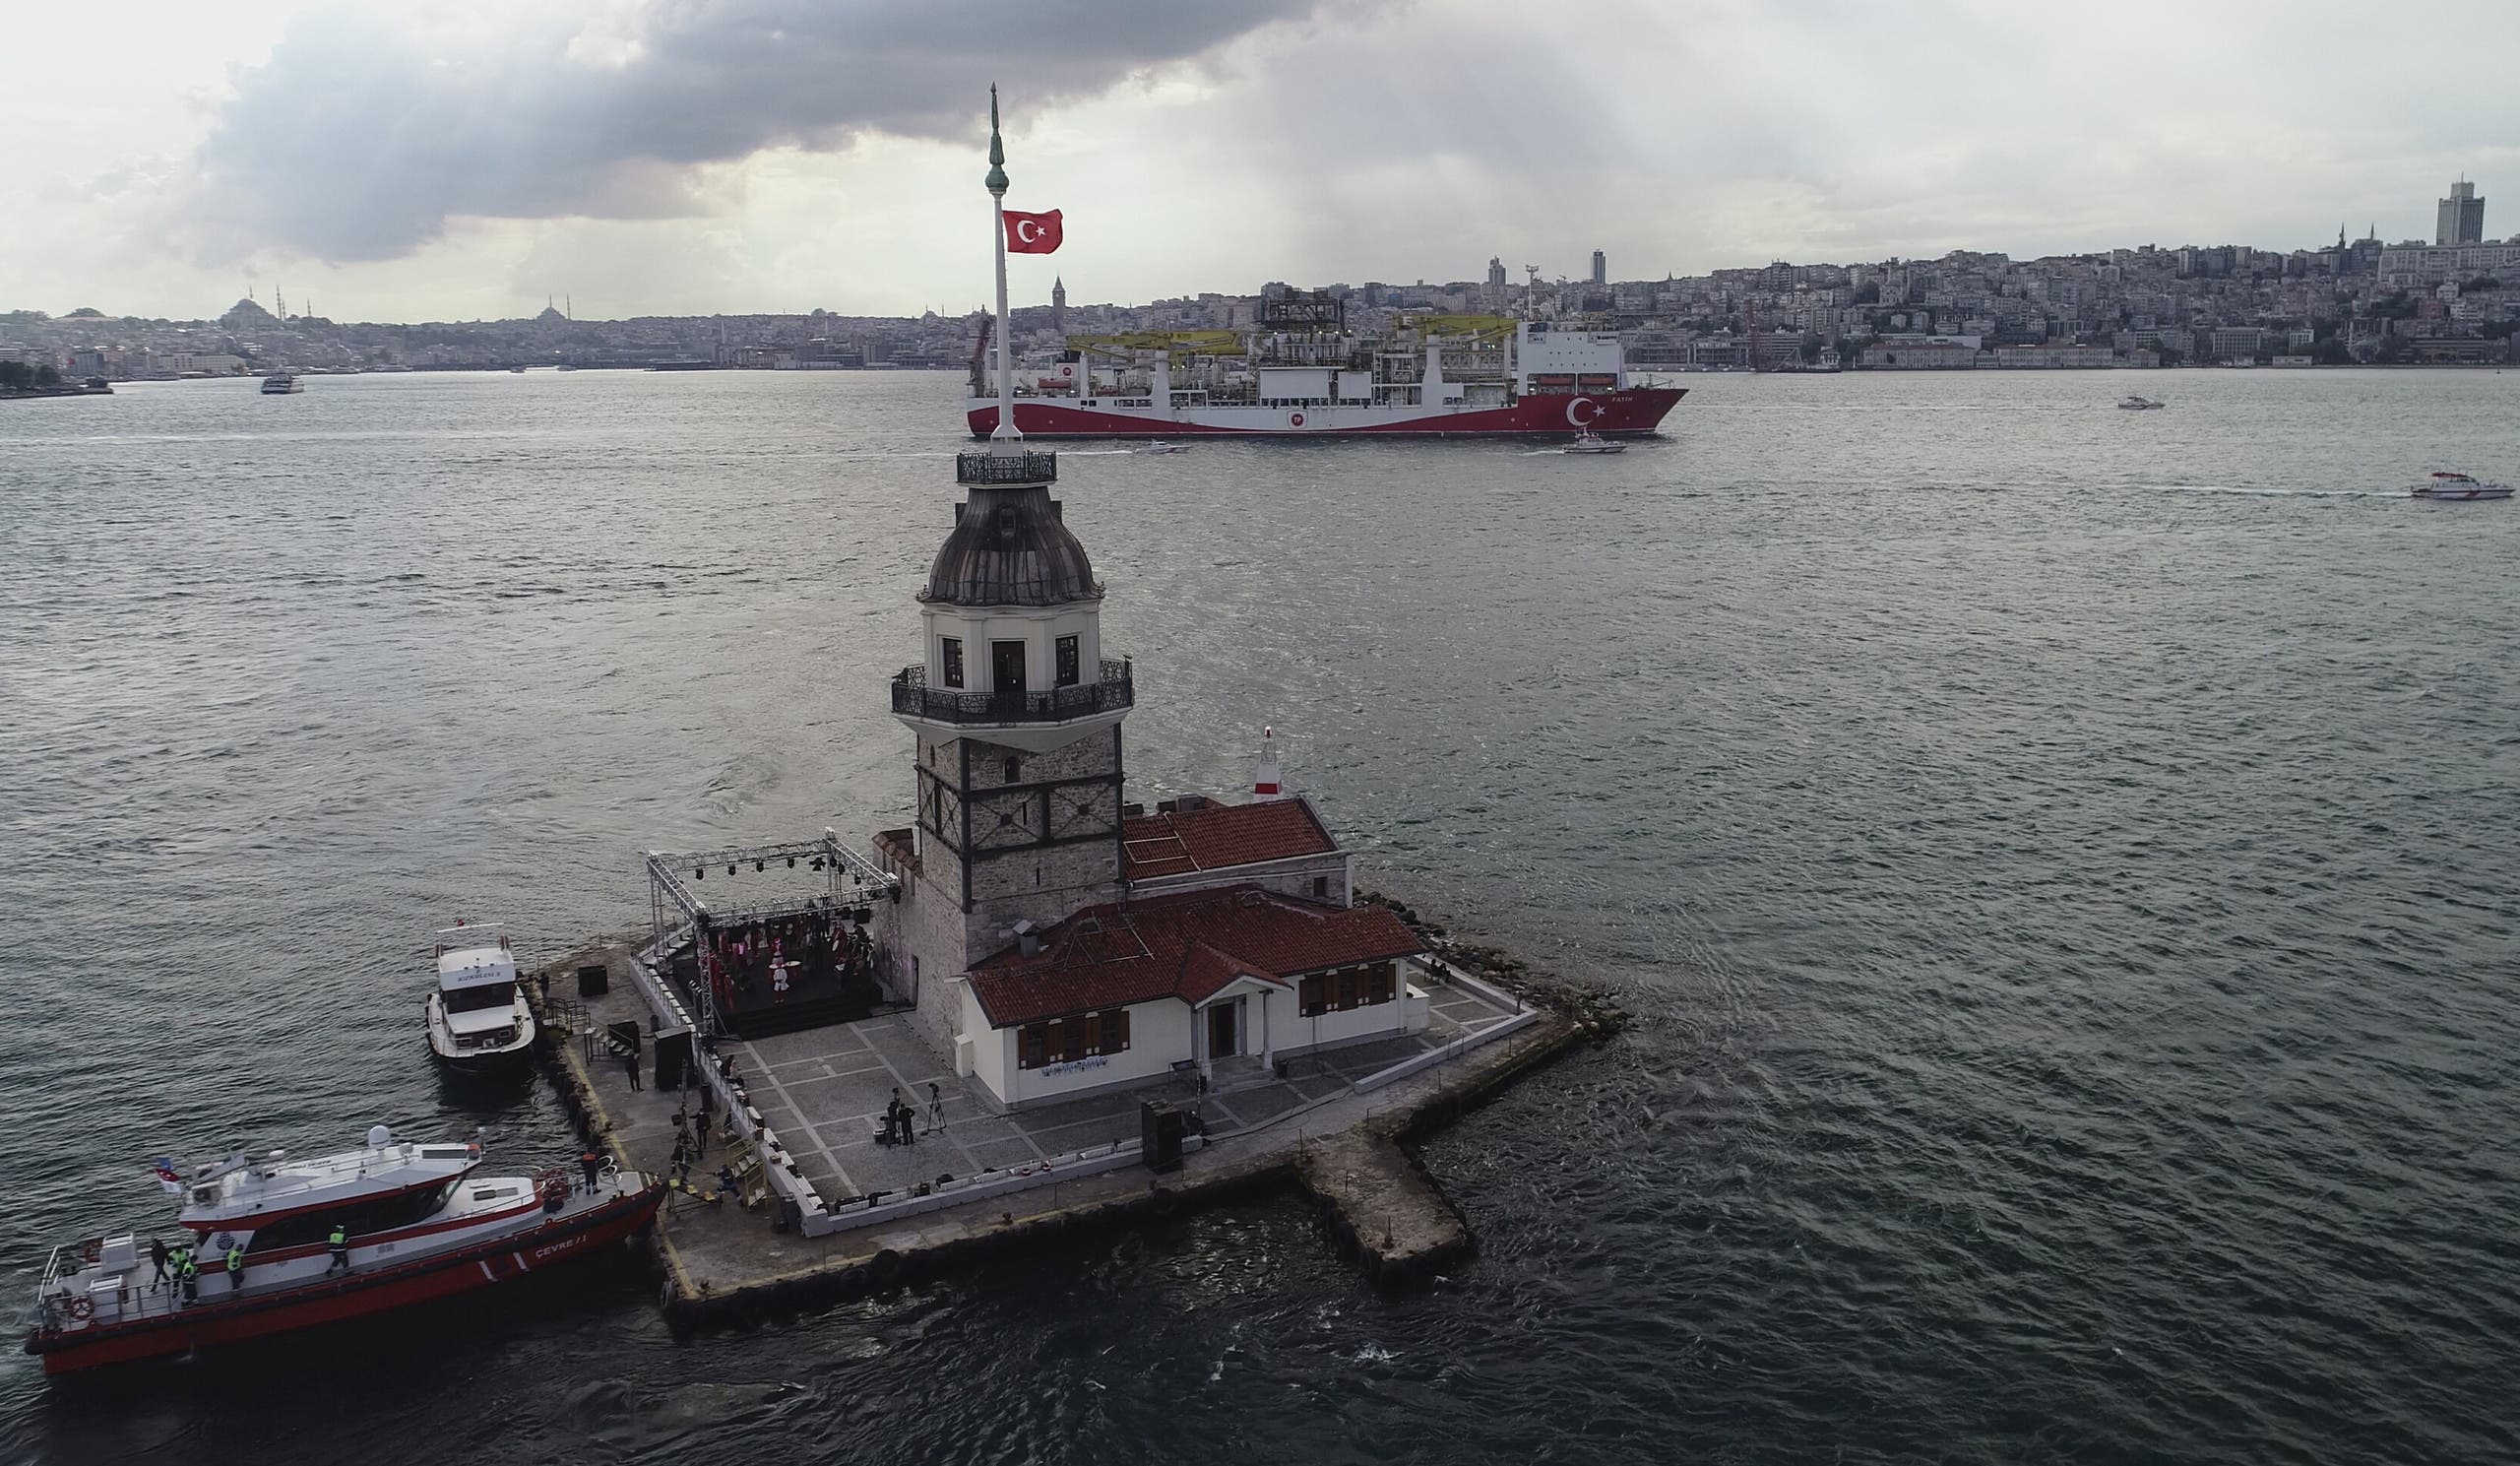  سفينة الحفر "فاتح" تعبر مضيق البوسفور في مايو الماضي متوجهةً إلى البحر الأسود